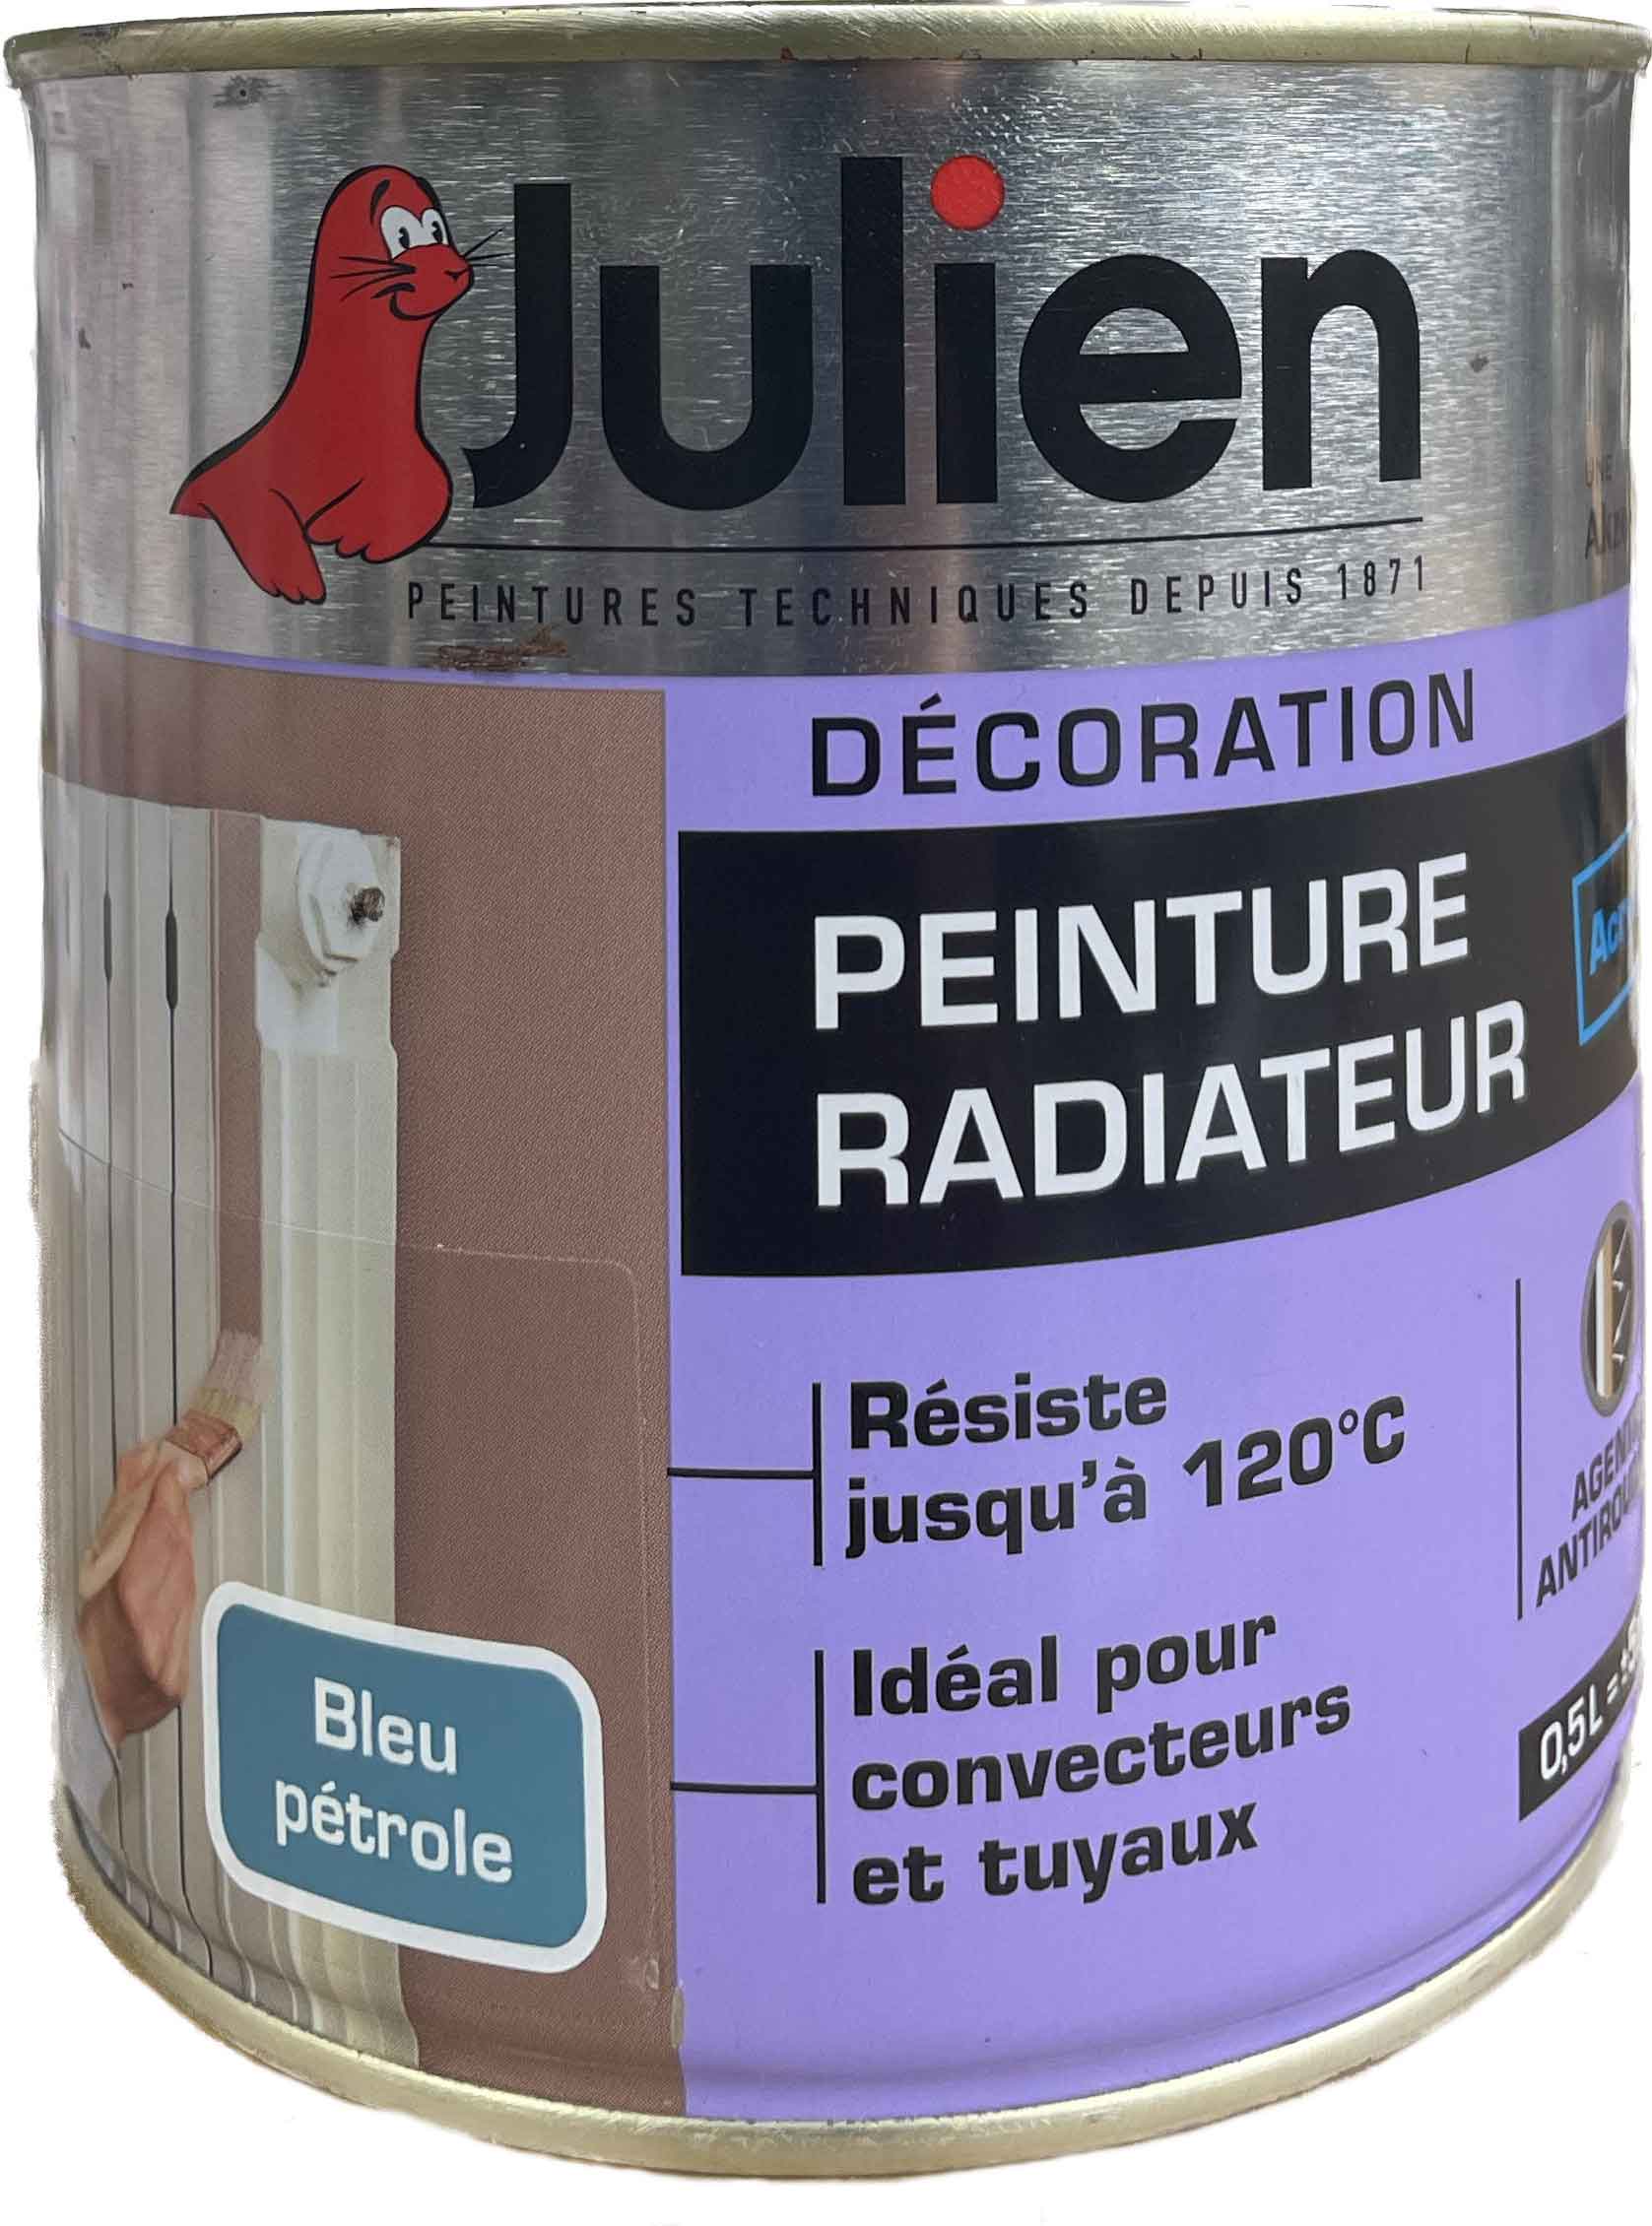 Peinture radiateur - special